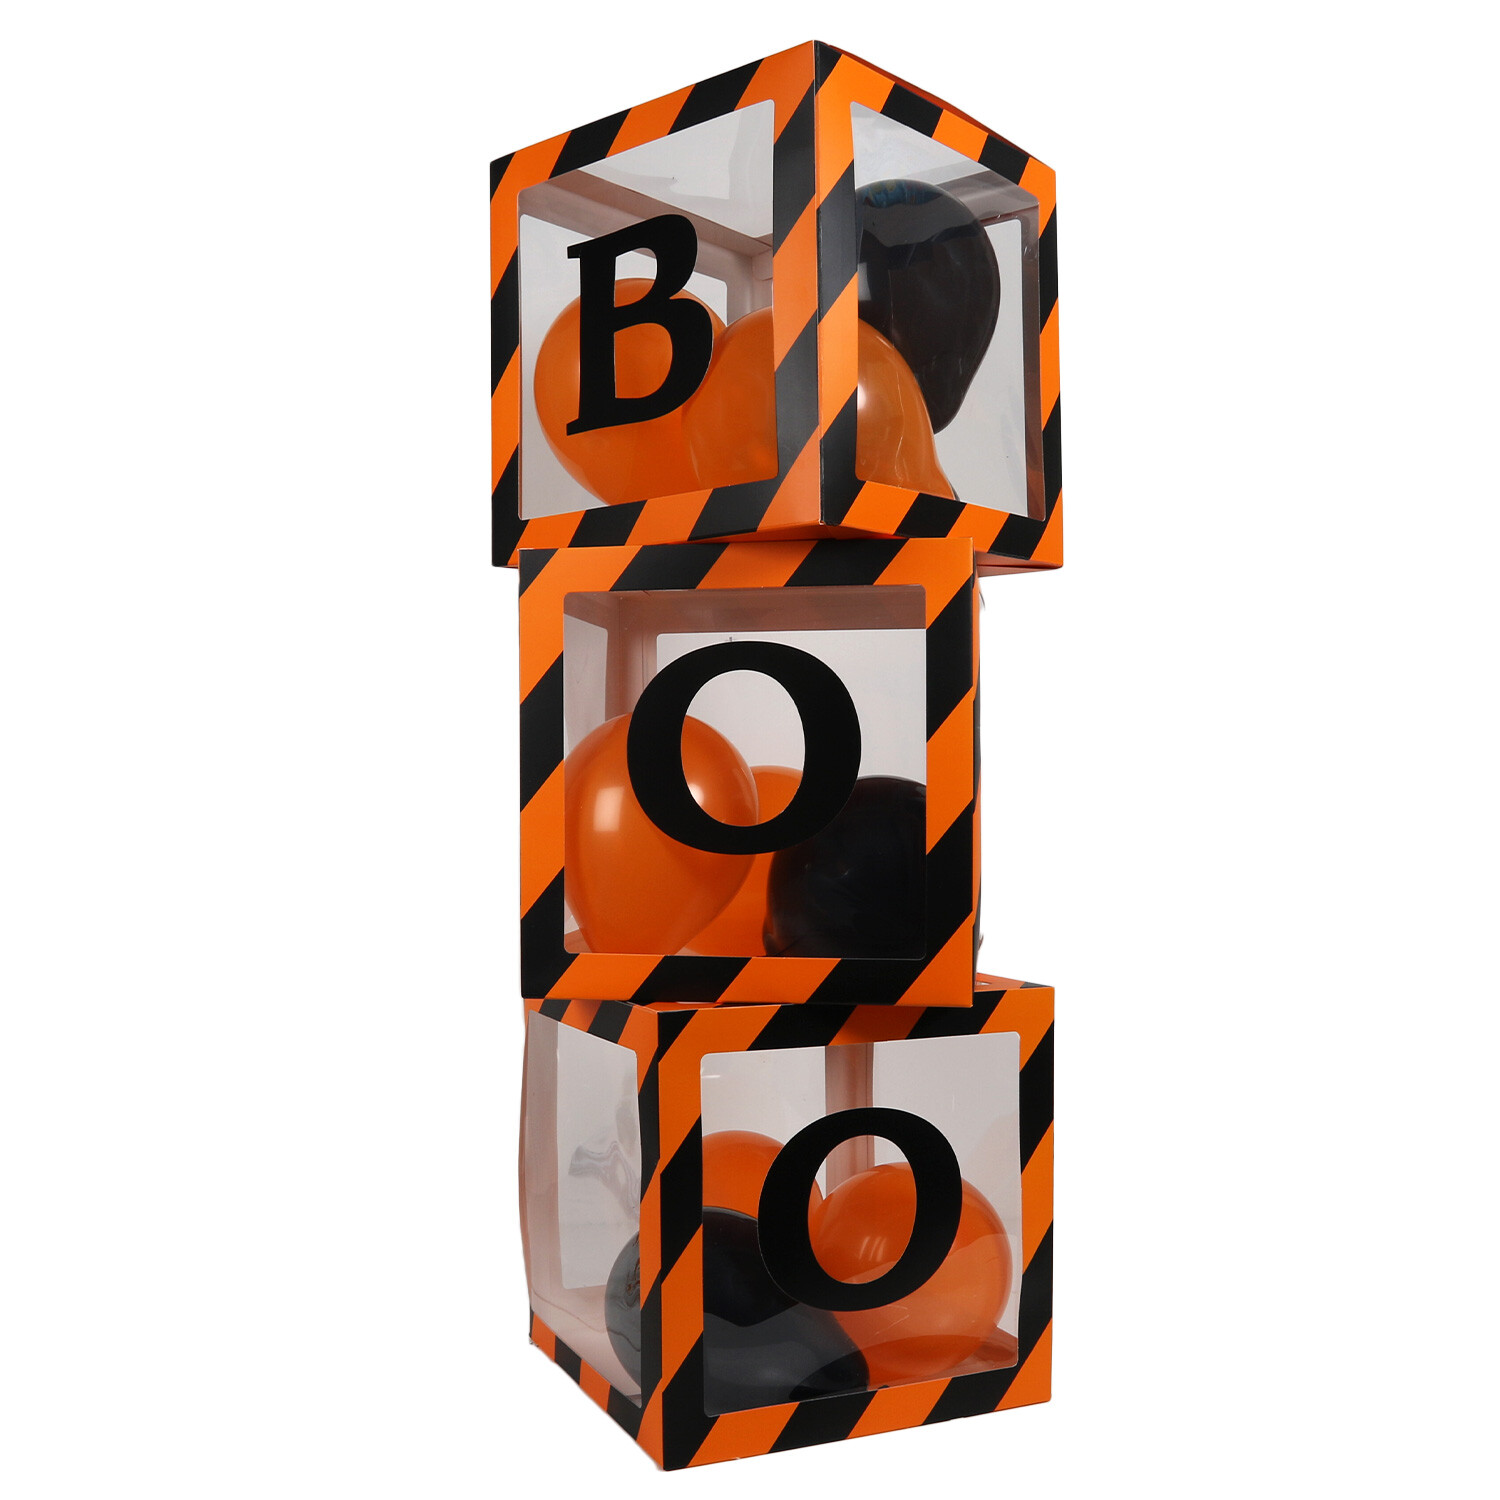 Boo Balloon Boxes - Orange Image 1